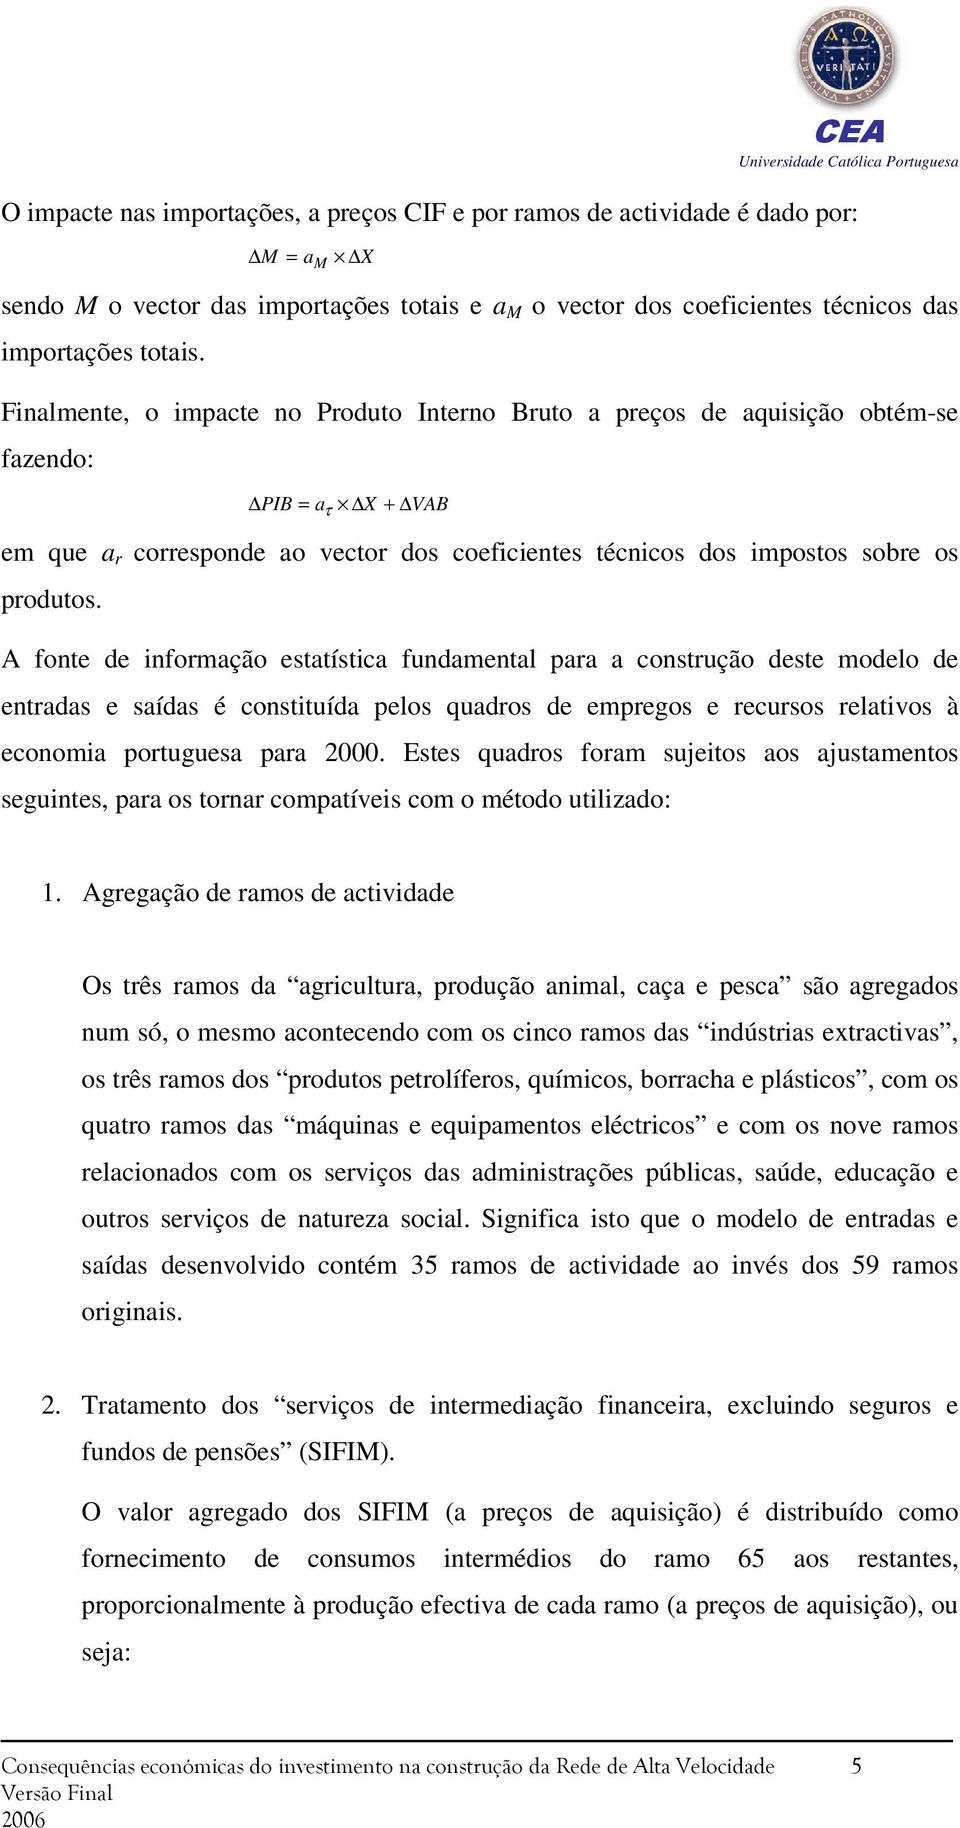 A fonte de informação estatística fundamental para a construção deste modelo de entradas e saídas é constituída pelos quadros de empregos e recursos relativos à economia portuguesa para 2000.